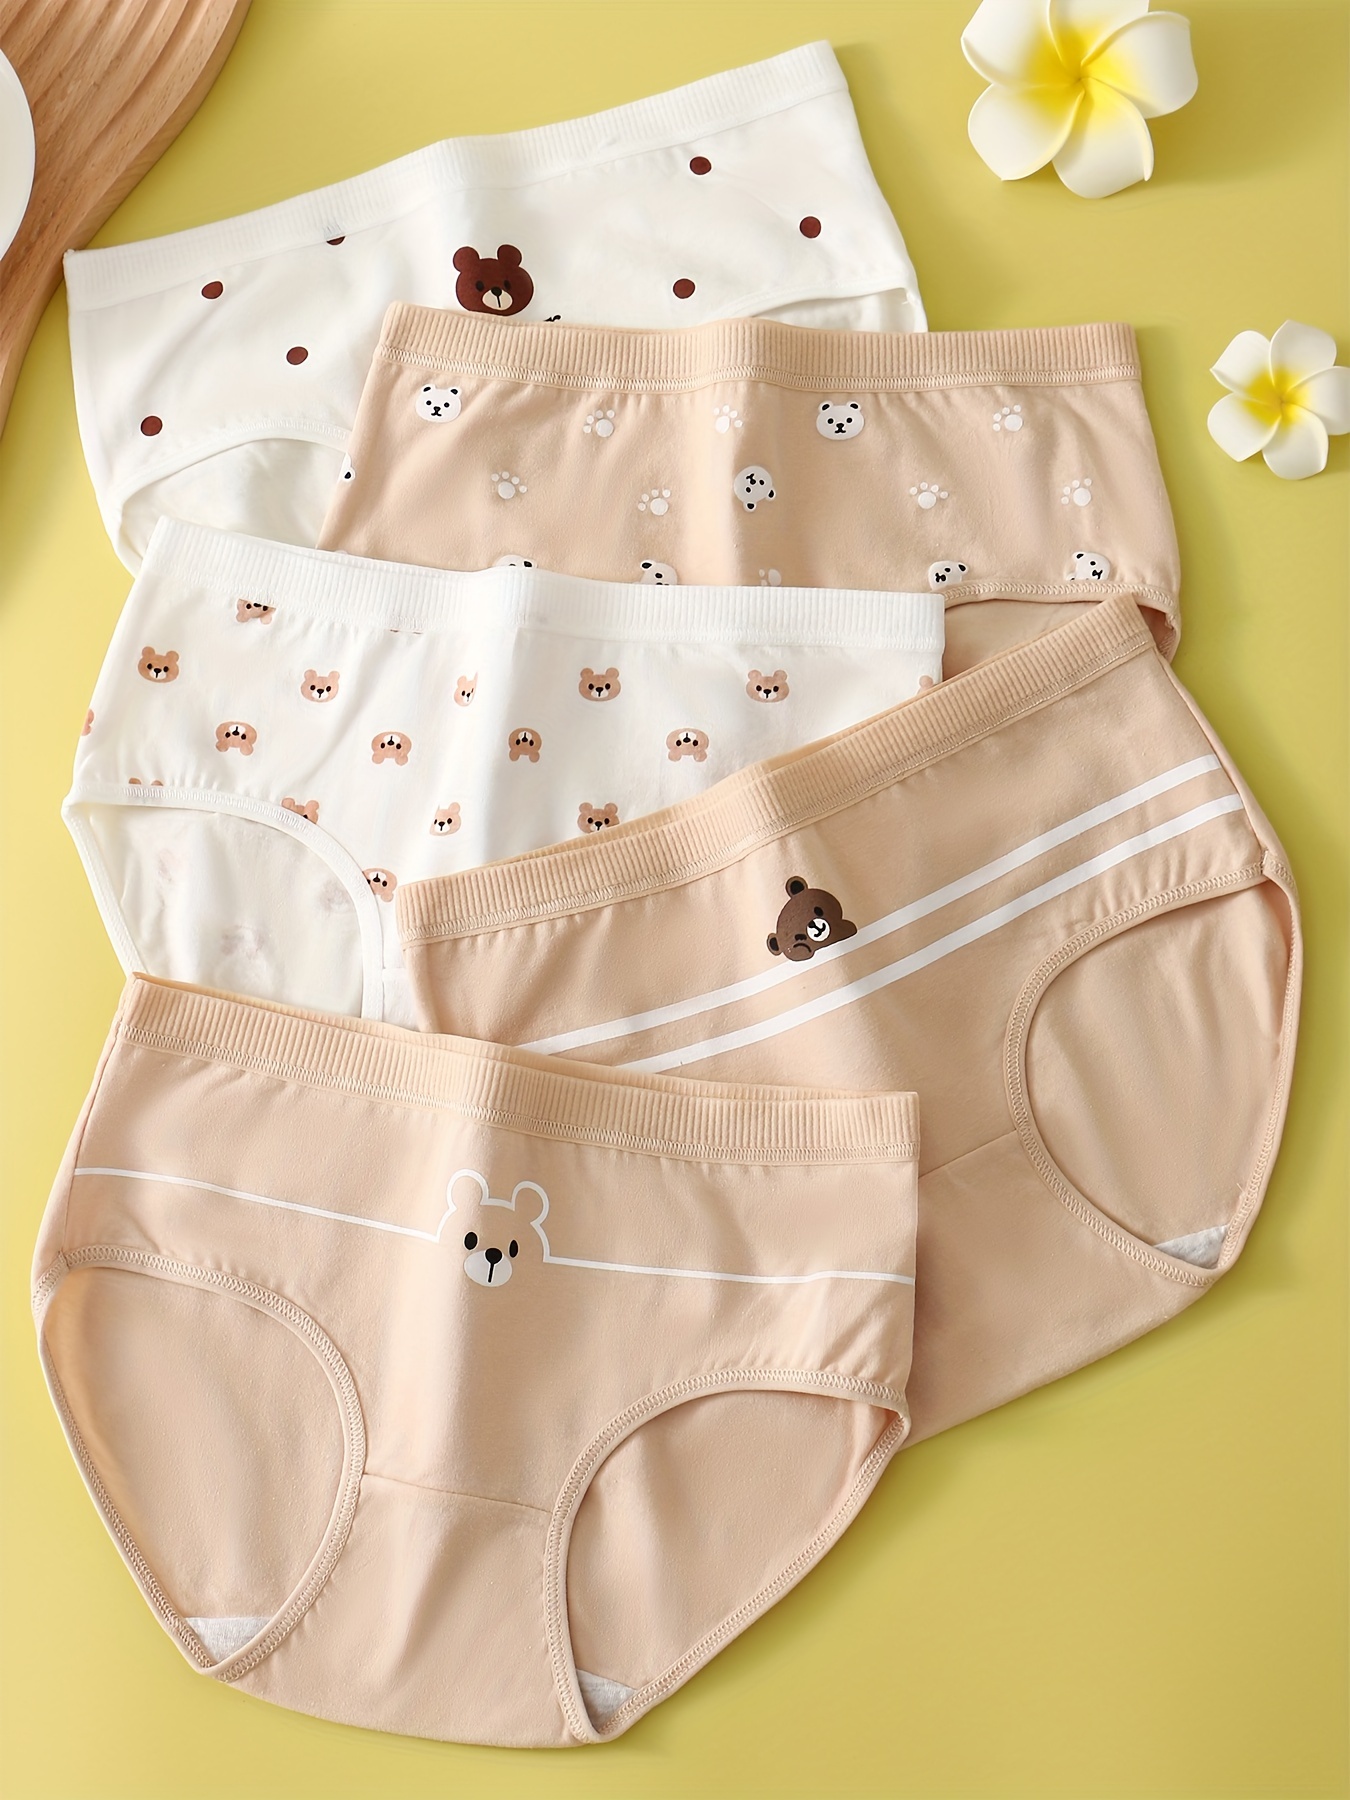 Children's underwear pure cotton girls' triangle baby 100% does